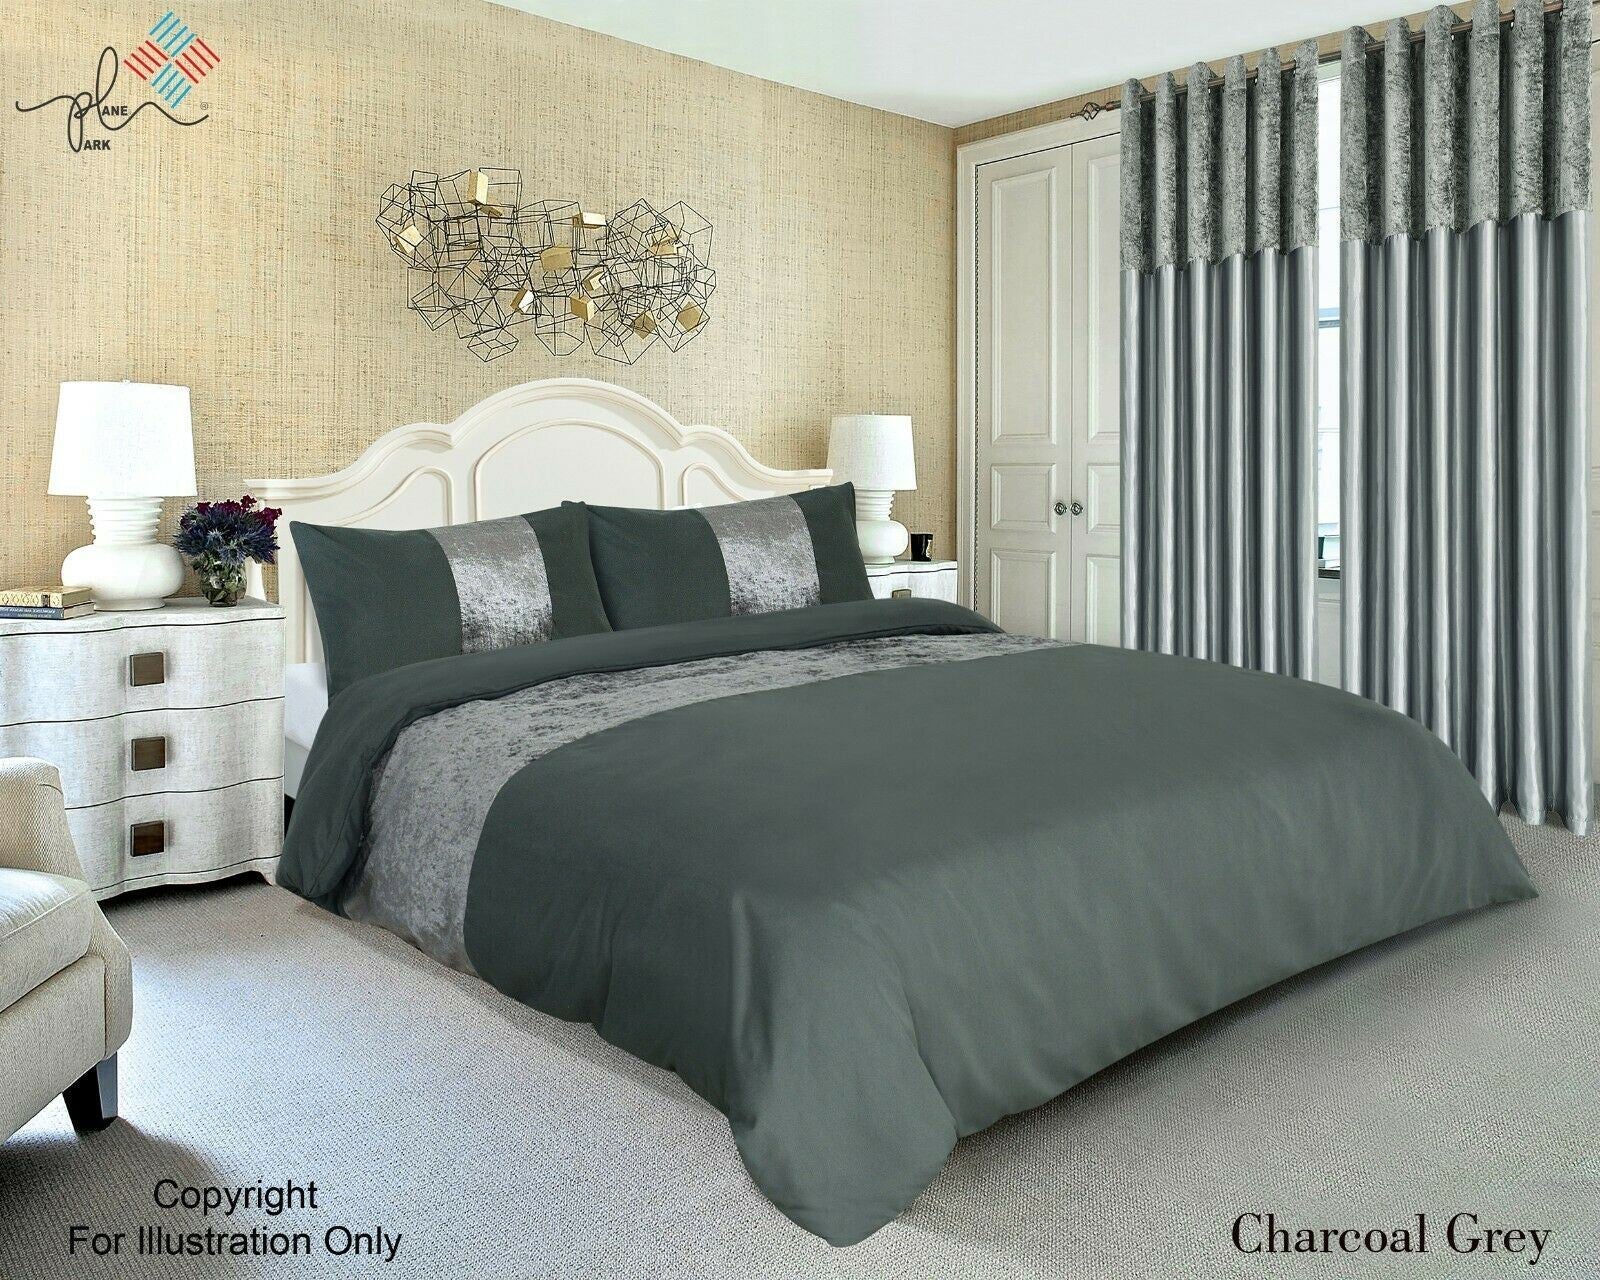 Luxury Crushed Velvet Panel Duvet Cover with Pillow Case Bedding Set